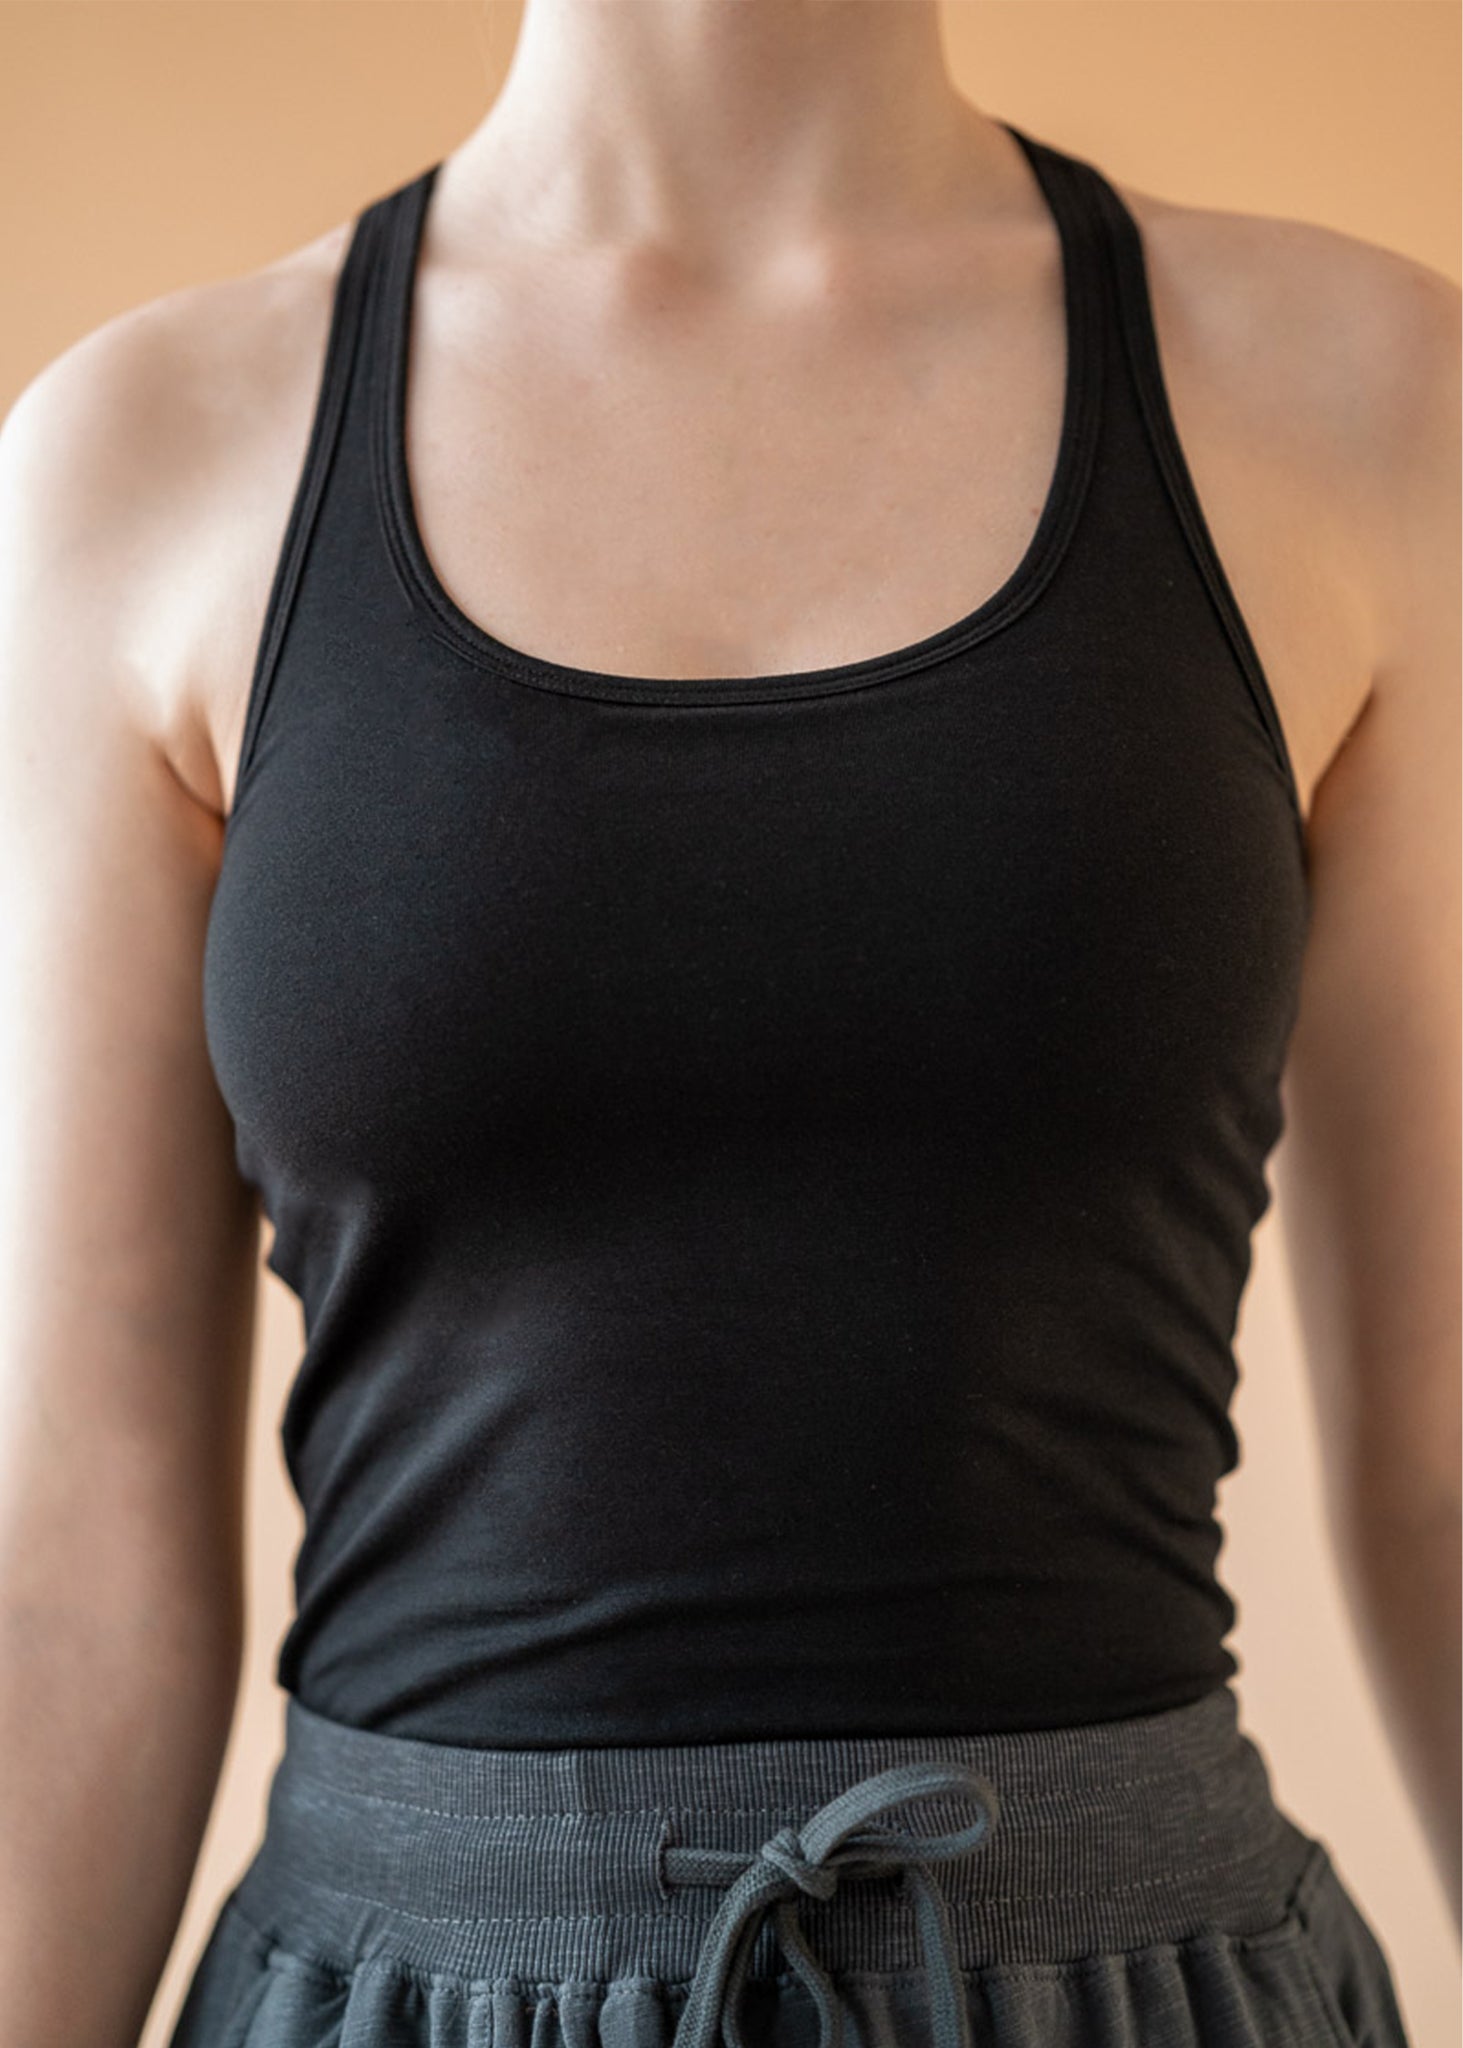 Women's Yoga Tops  Sports Bras, Tanks & Tees For Women – Anjali